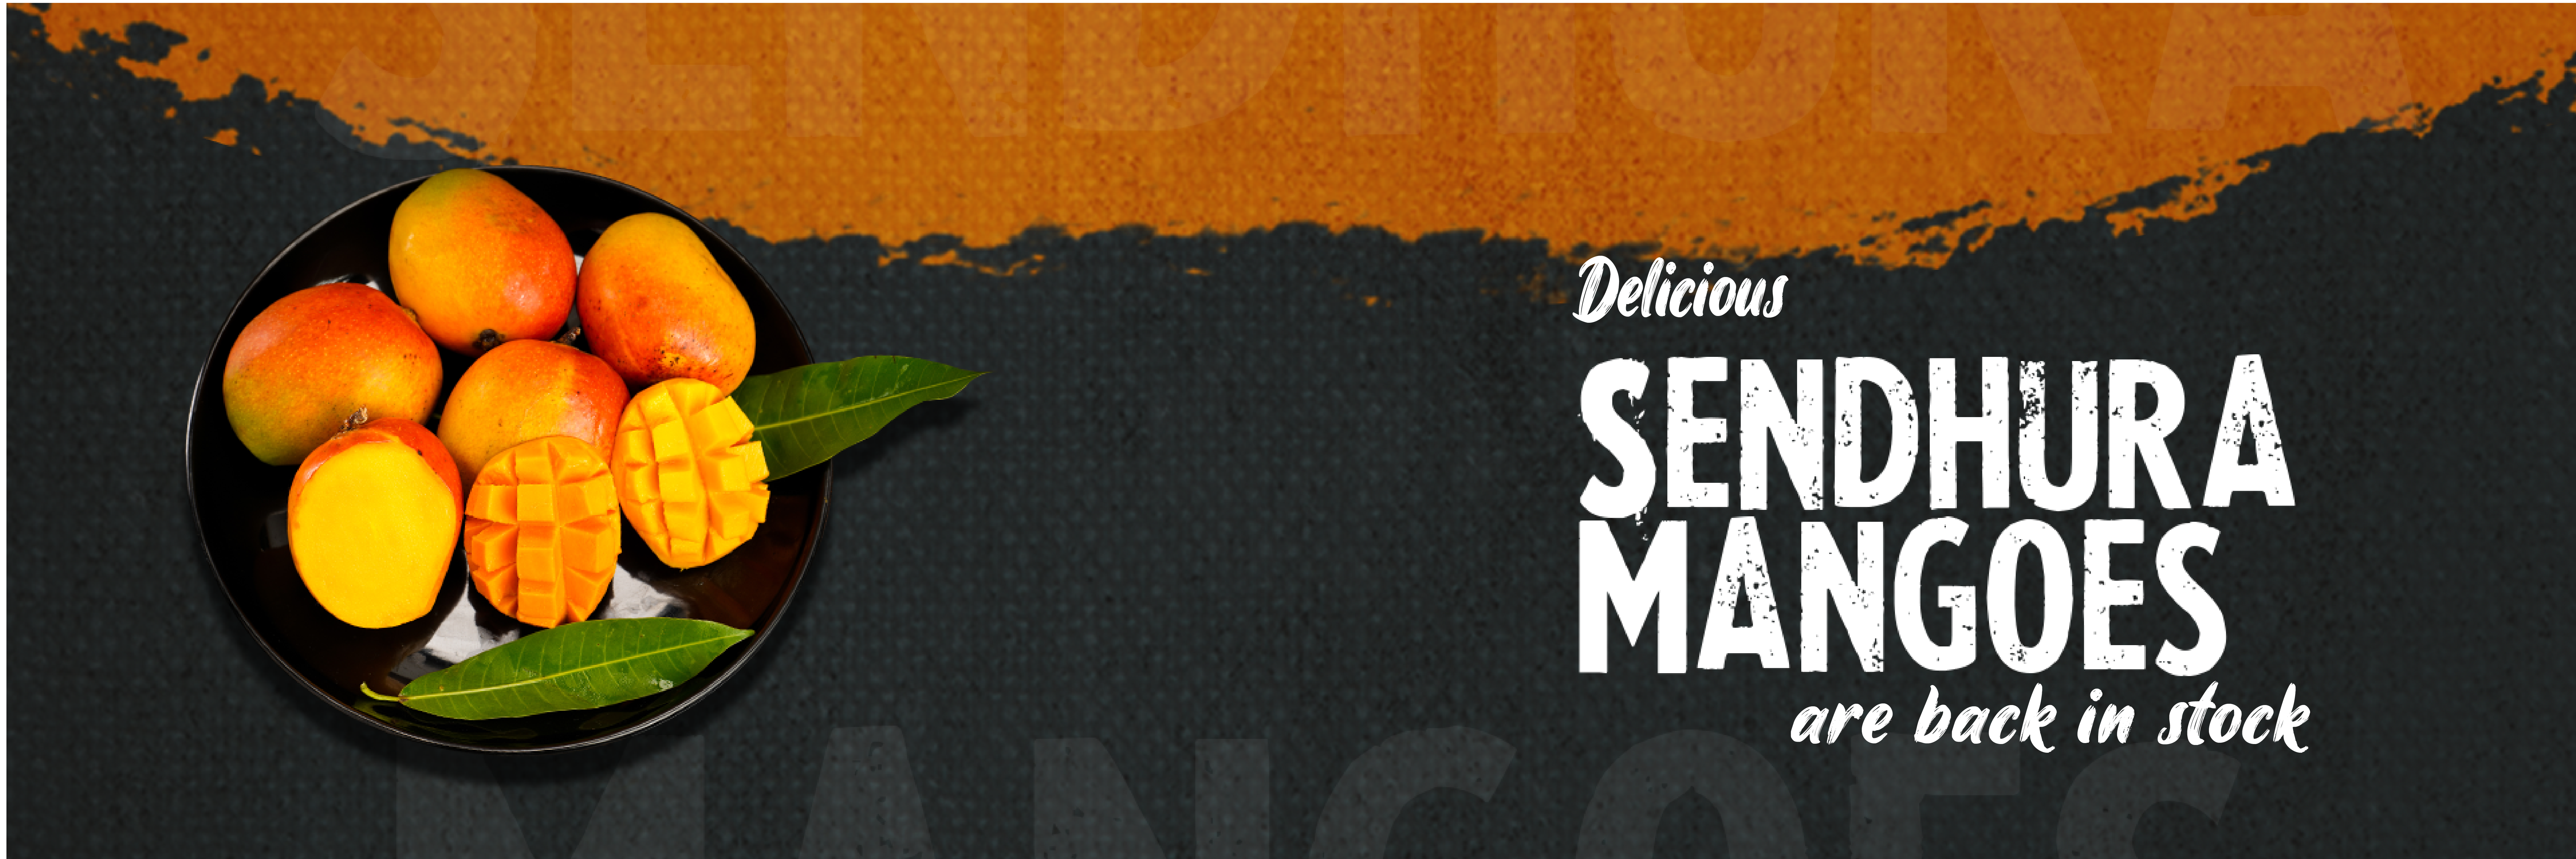 Sendhura mango without button-01